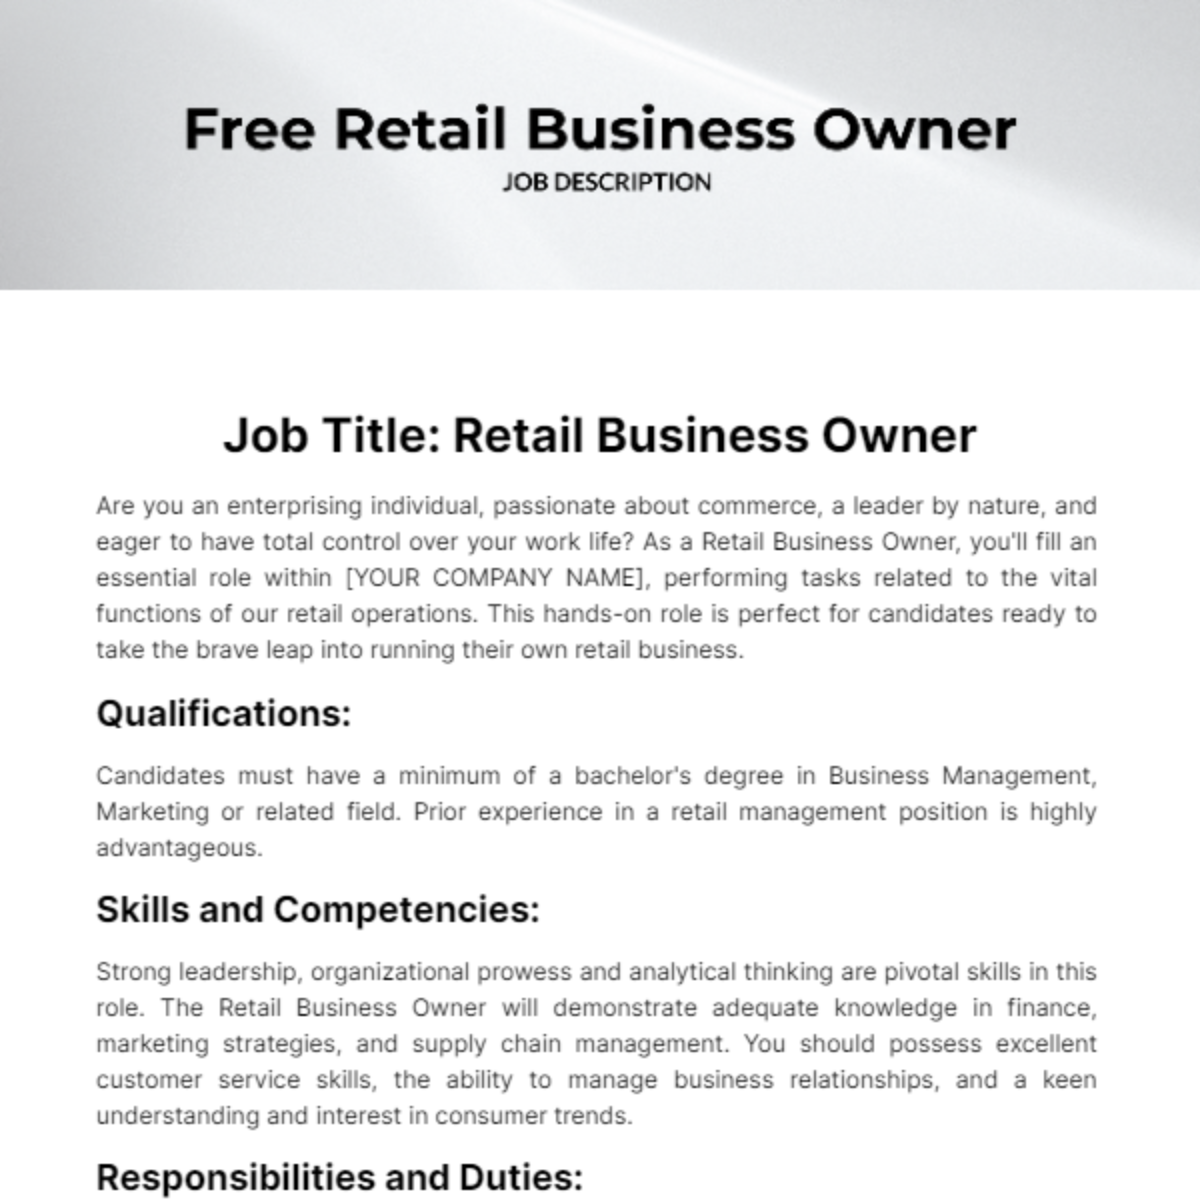 Free Retail Business Owner Job Description Template